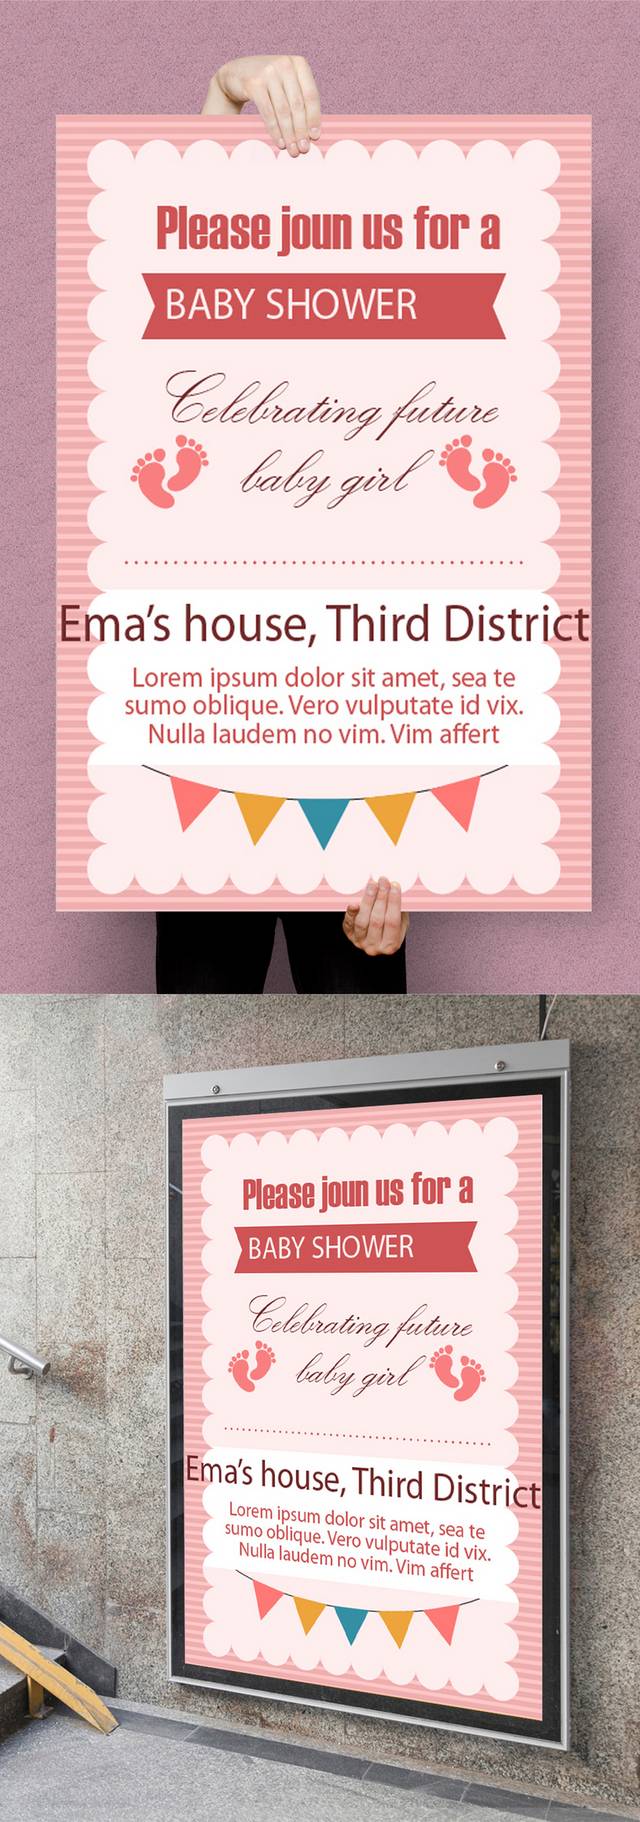 粉色时尚母婴店宣传海报